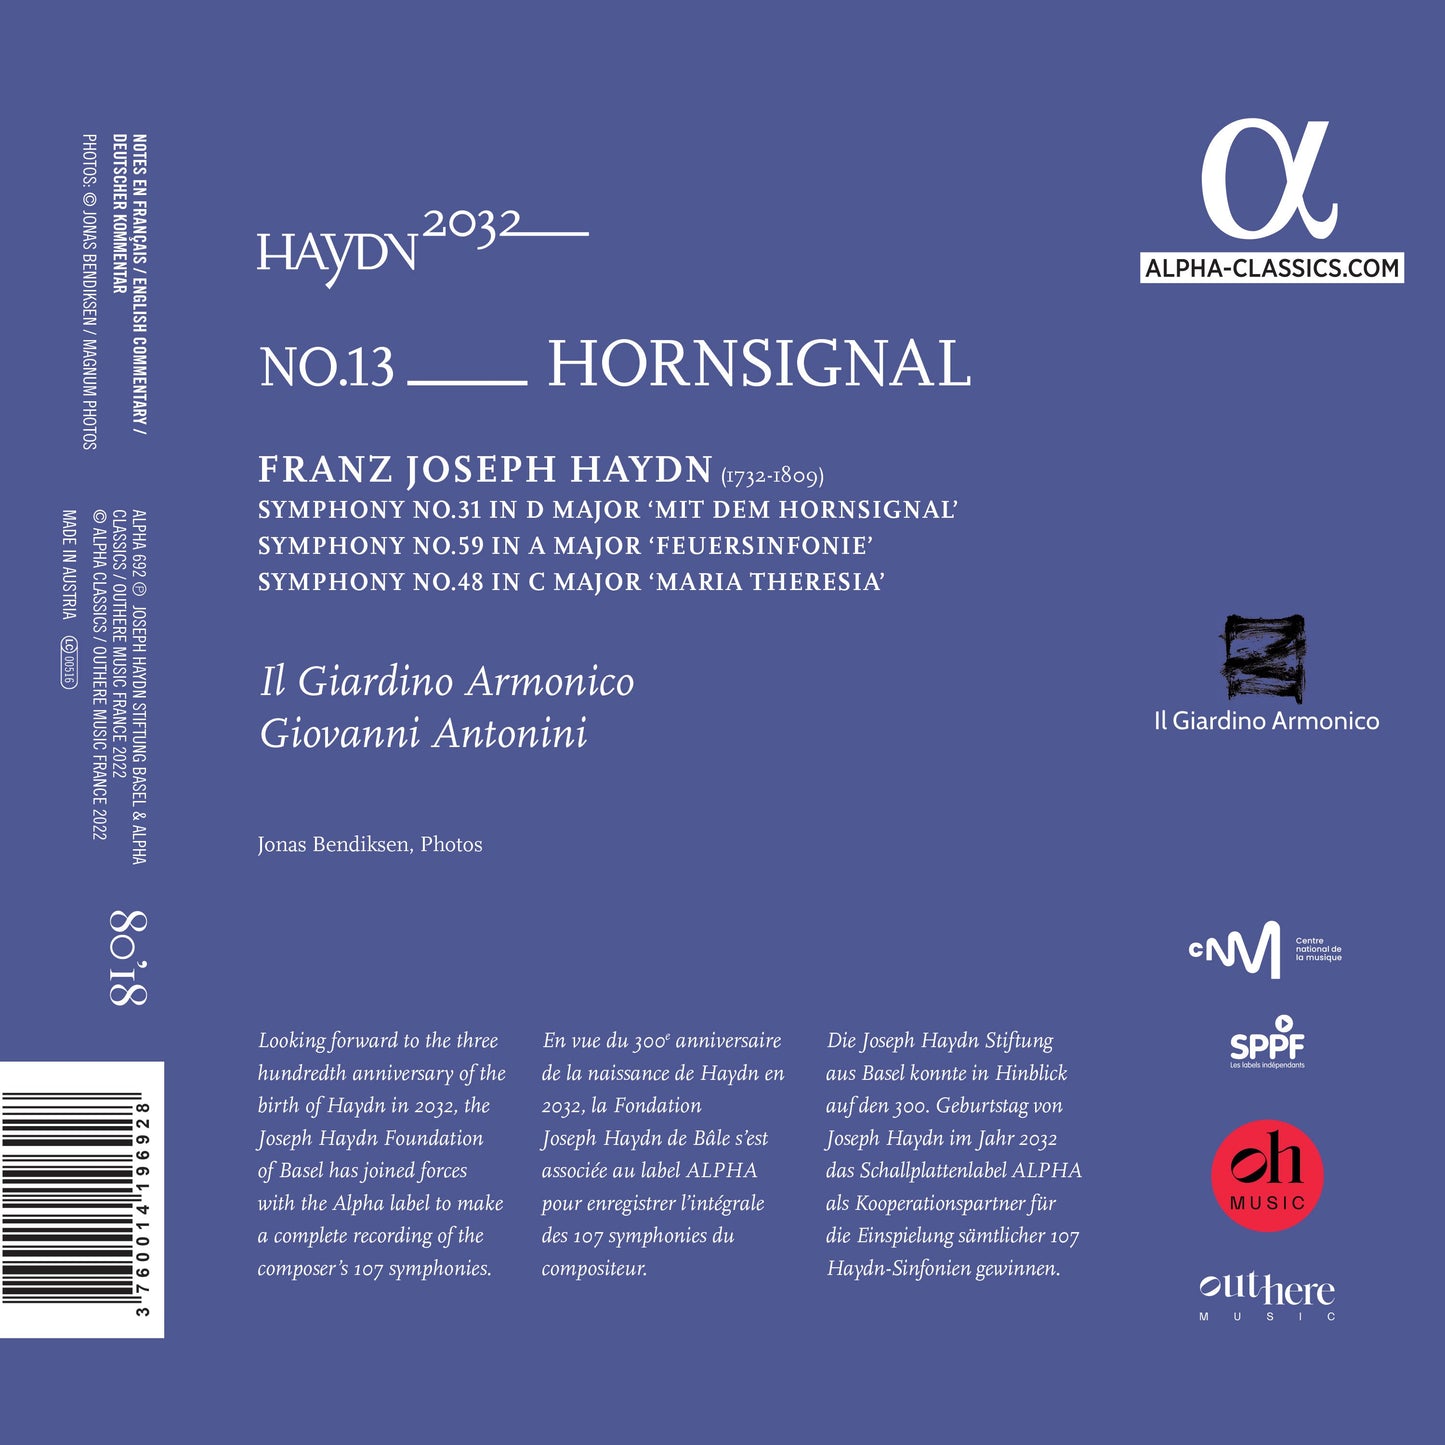 Haydn 2032, Vol. 13 - Horn Signal